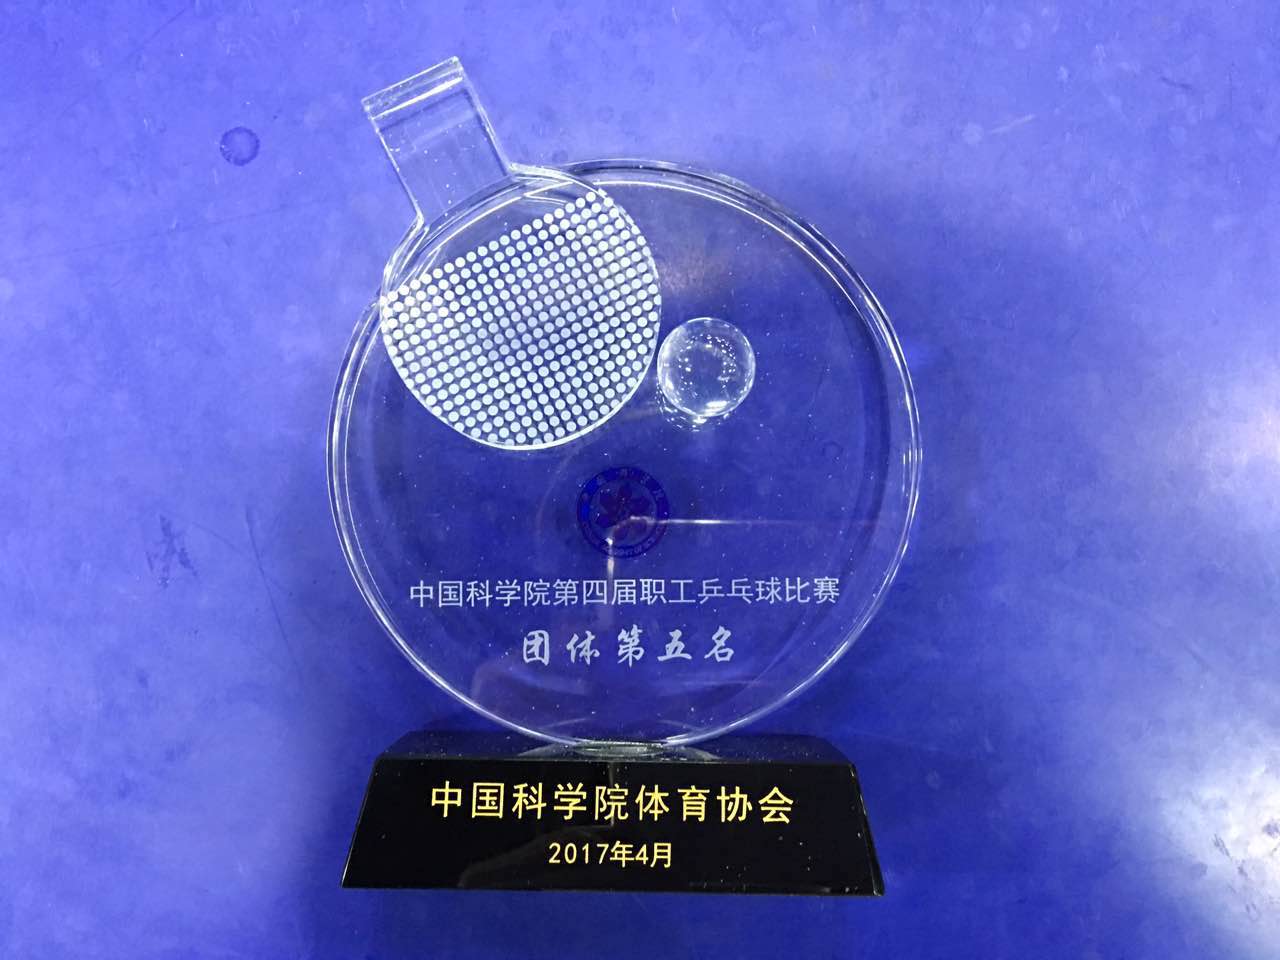 我校组队参加中国科学院第四届职工乒乓球比赛